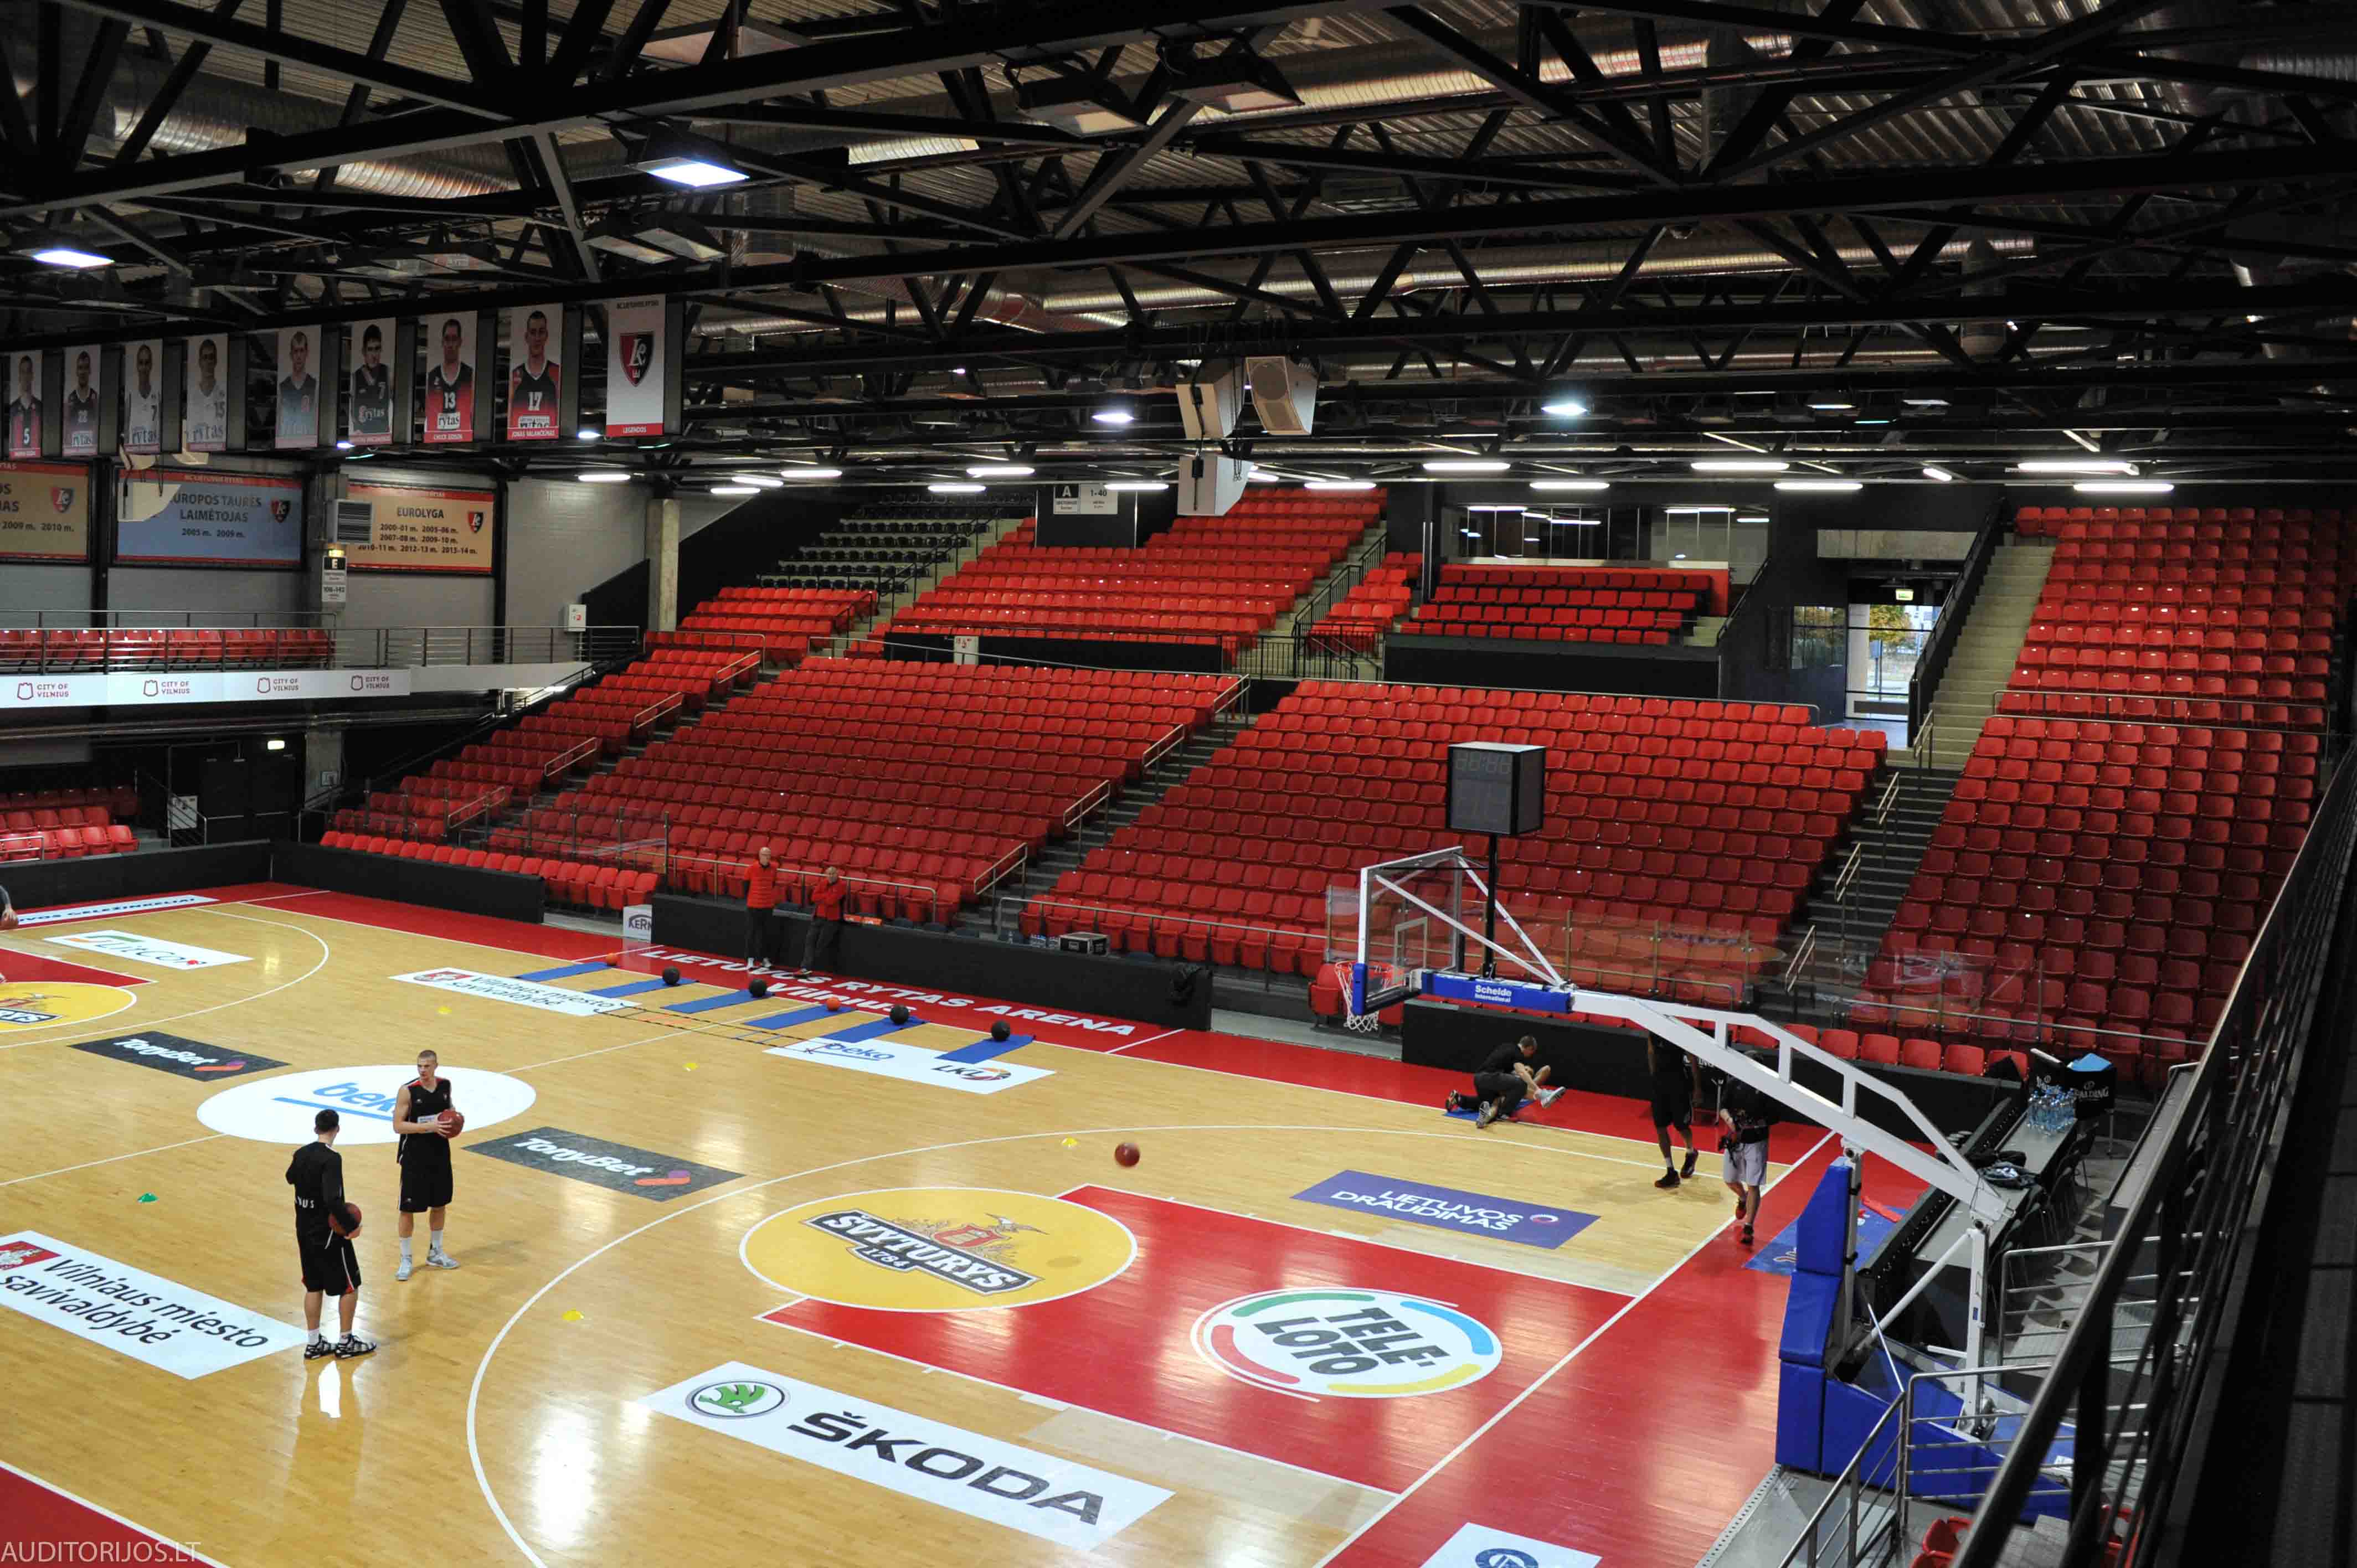 Lietuvos Rytas Arena Seating Vertika DSC_3350